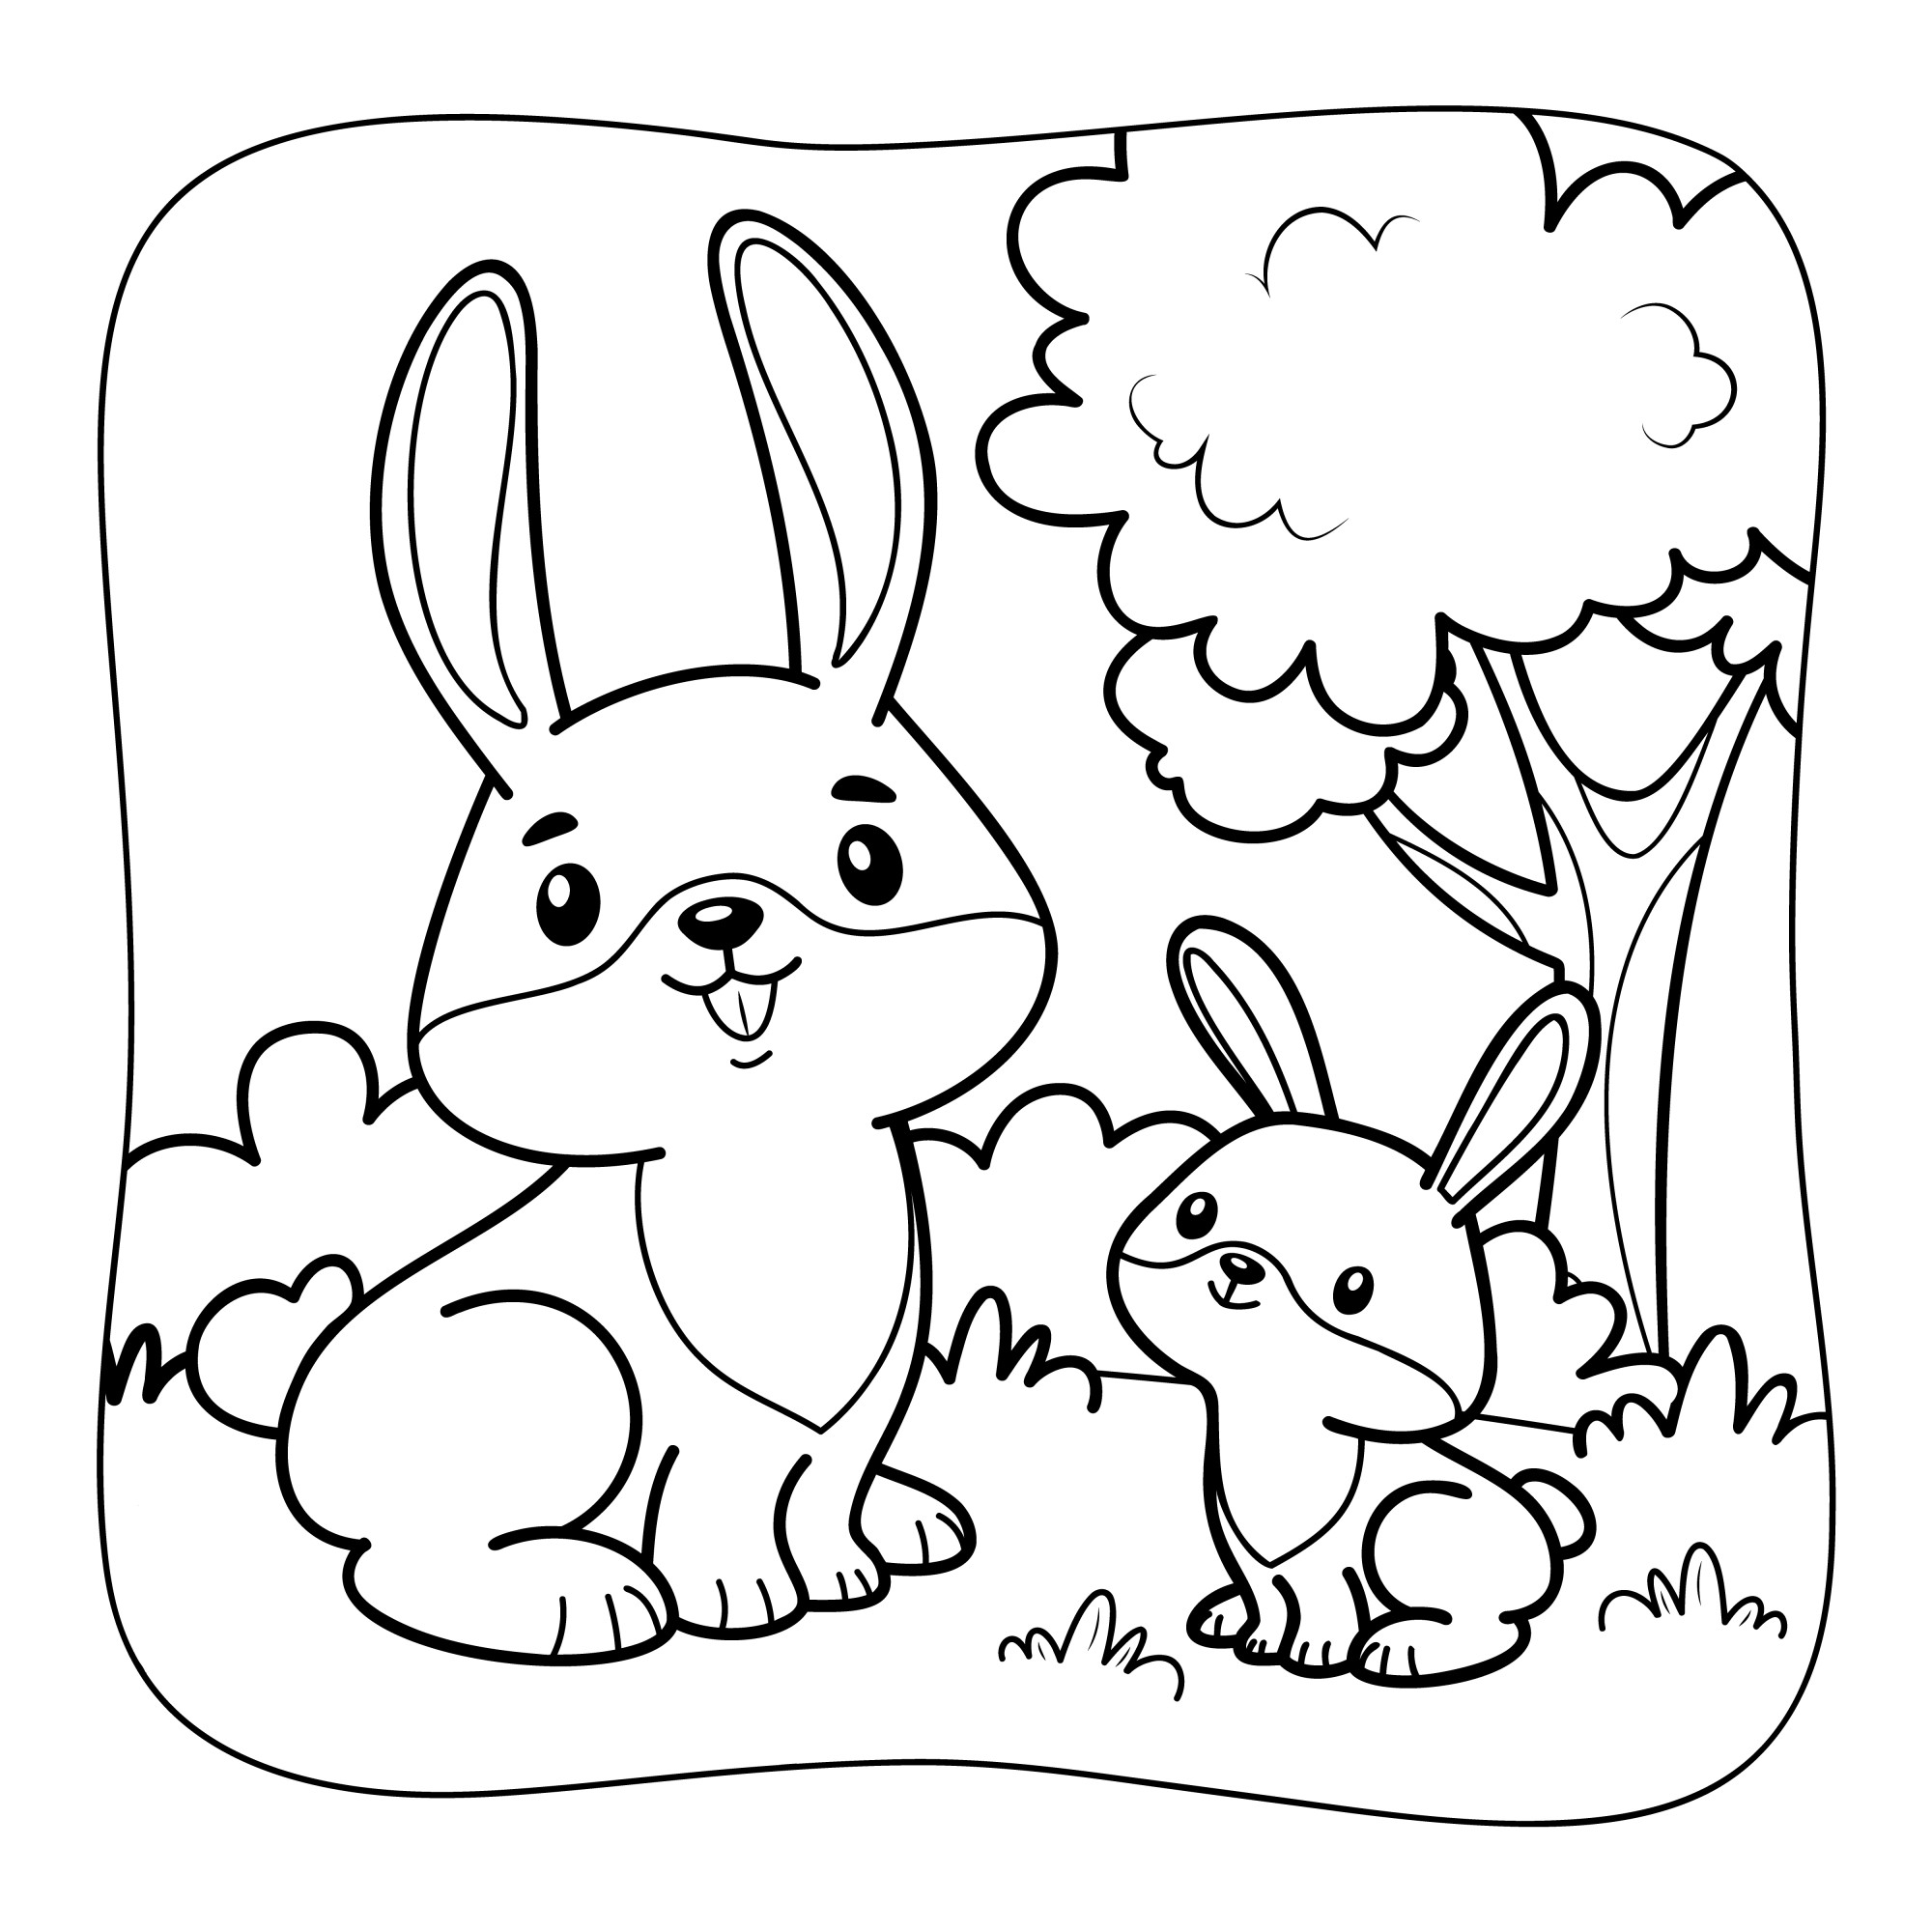 Раскраска для детей: кролики друзья рядом с дубом